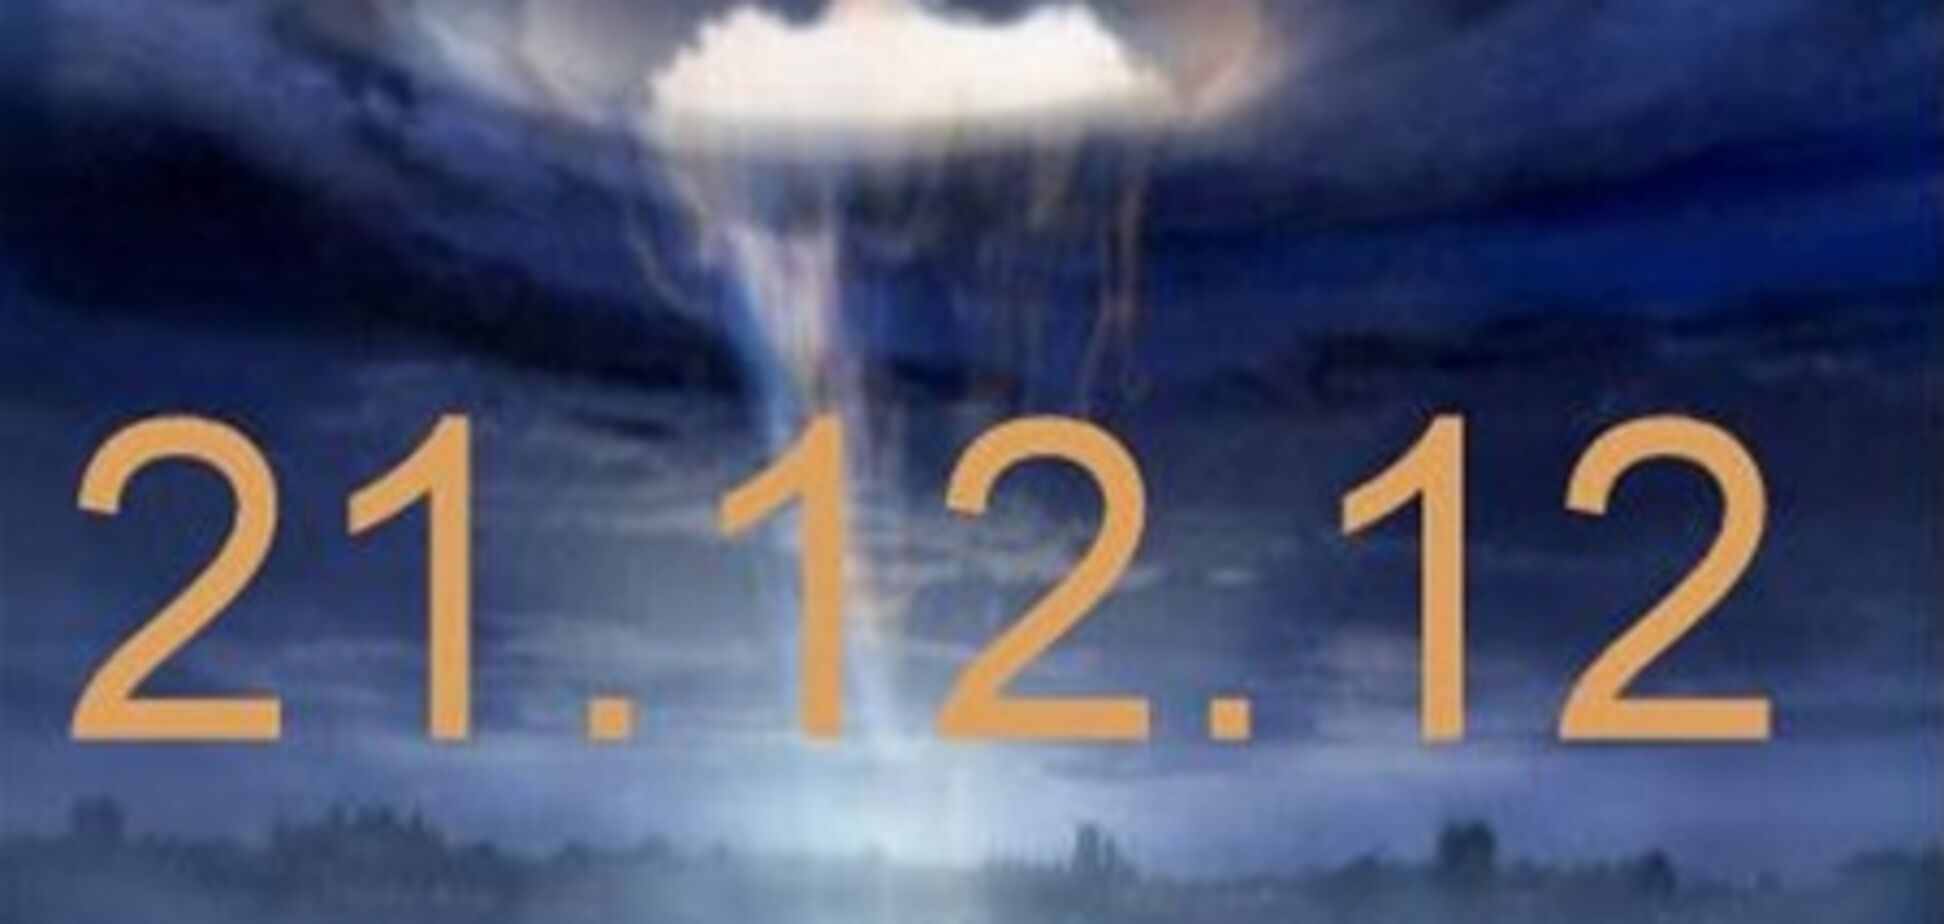 Бухгалтер пересчитал 21.12.12 – и отложил Конец Света. Видео  